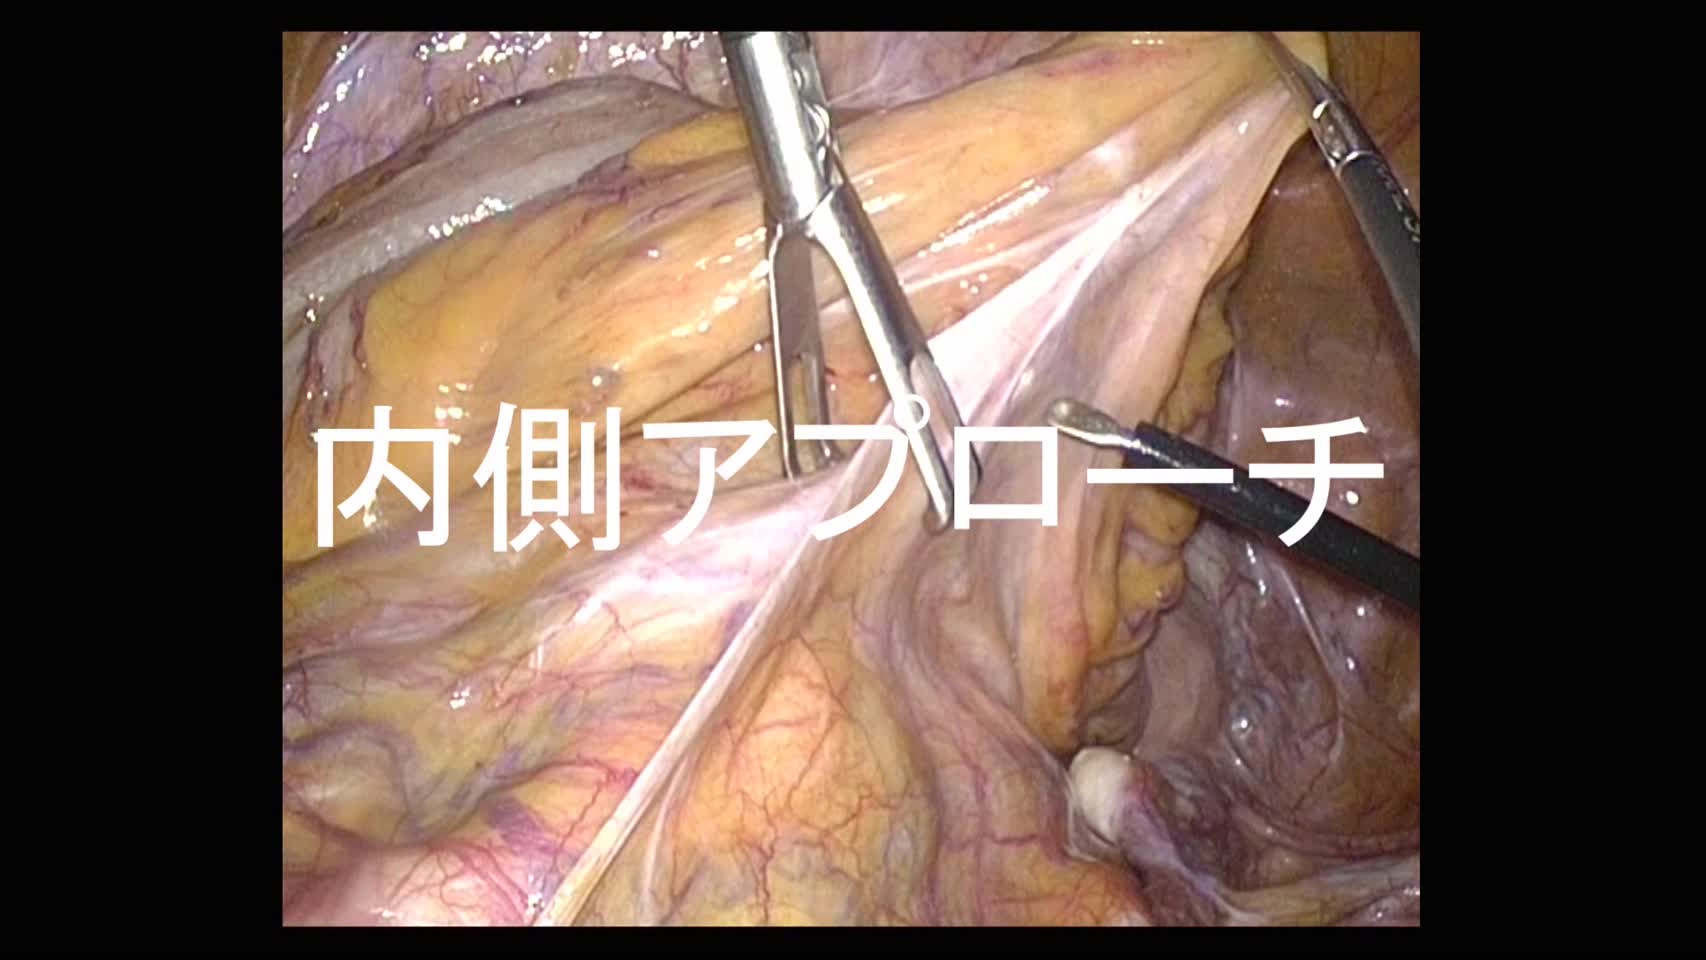 動画1 左側結腸ならびに直腸の悪性腫瘍に対する腹腔鏡下手術における術野の展開法...